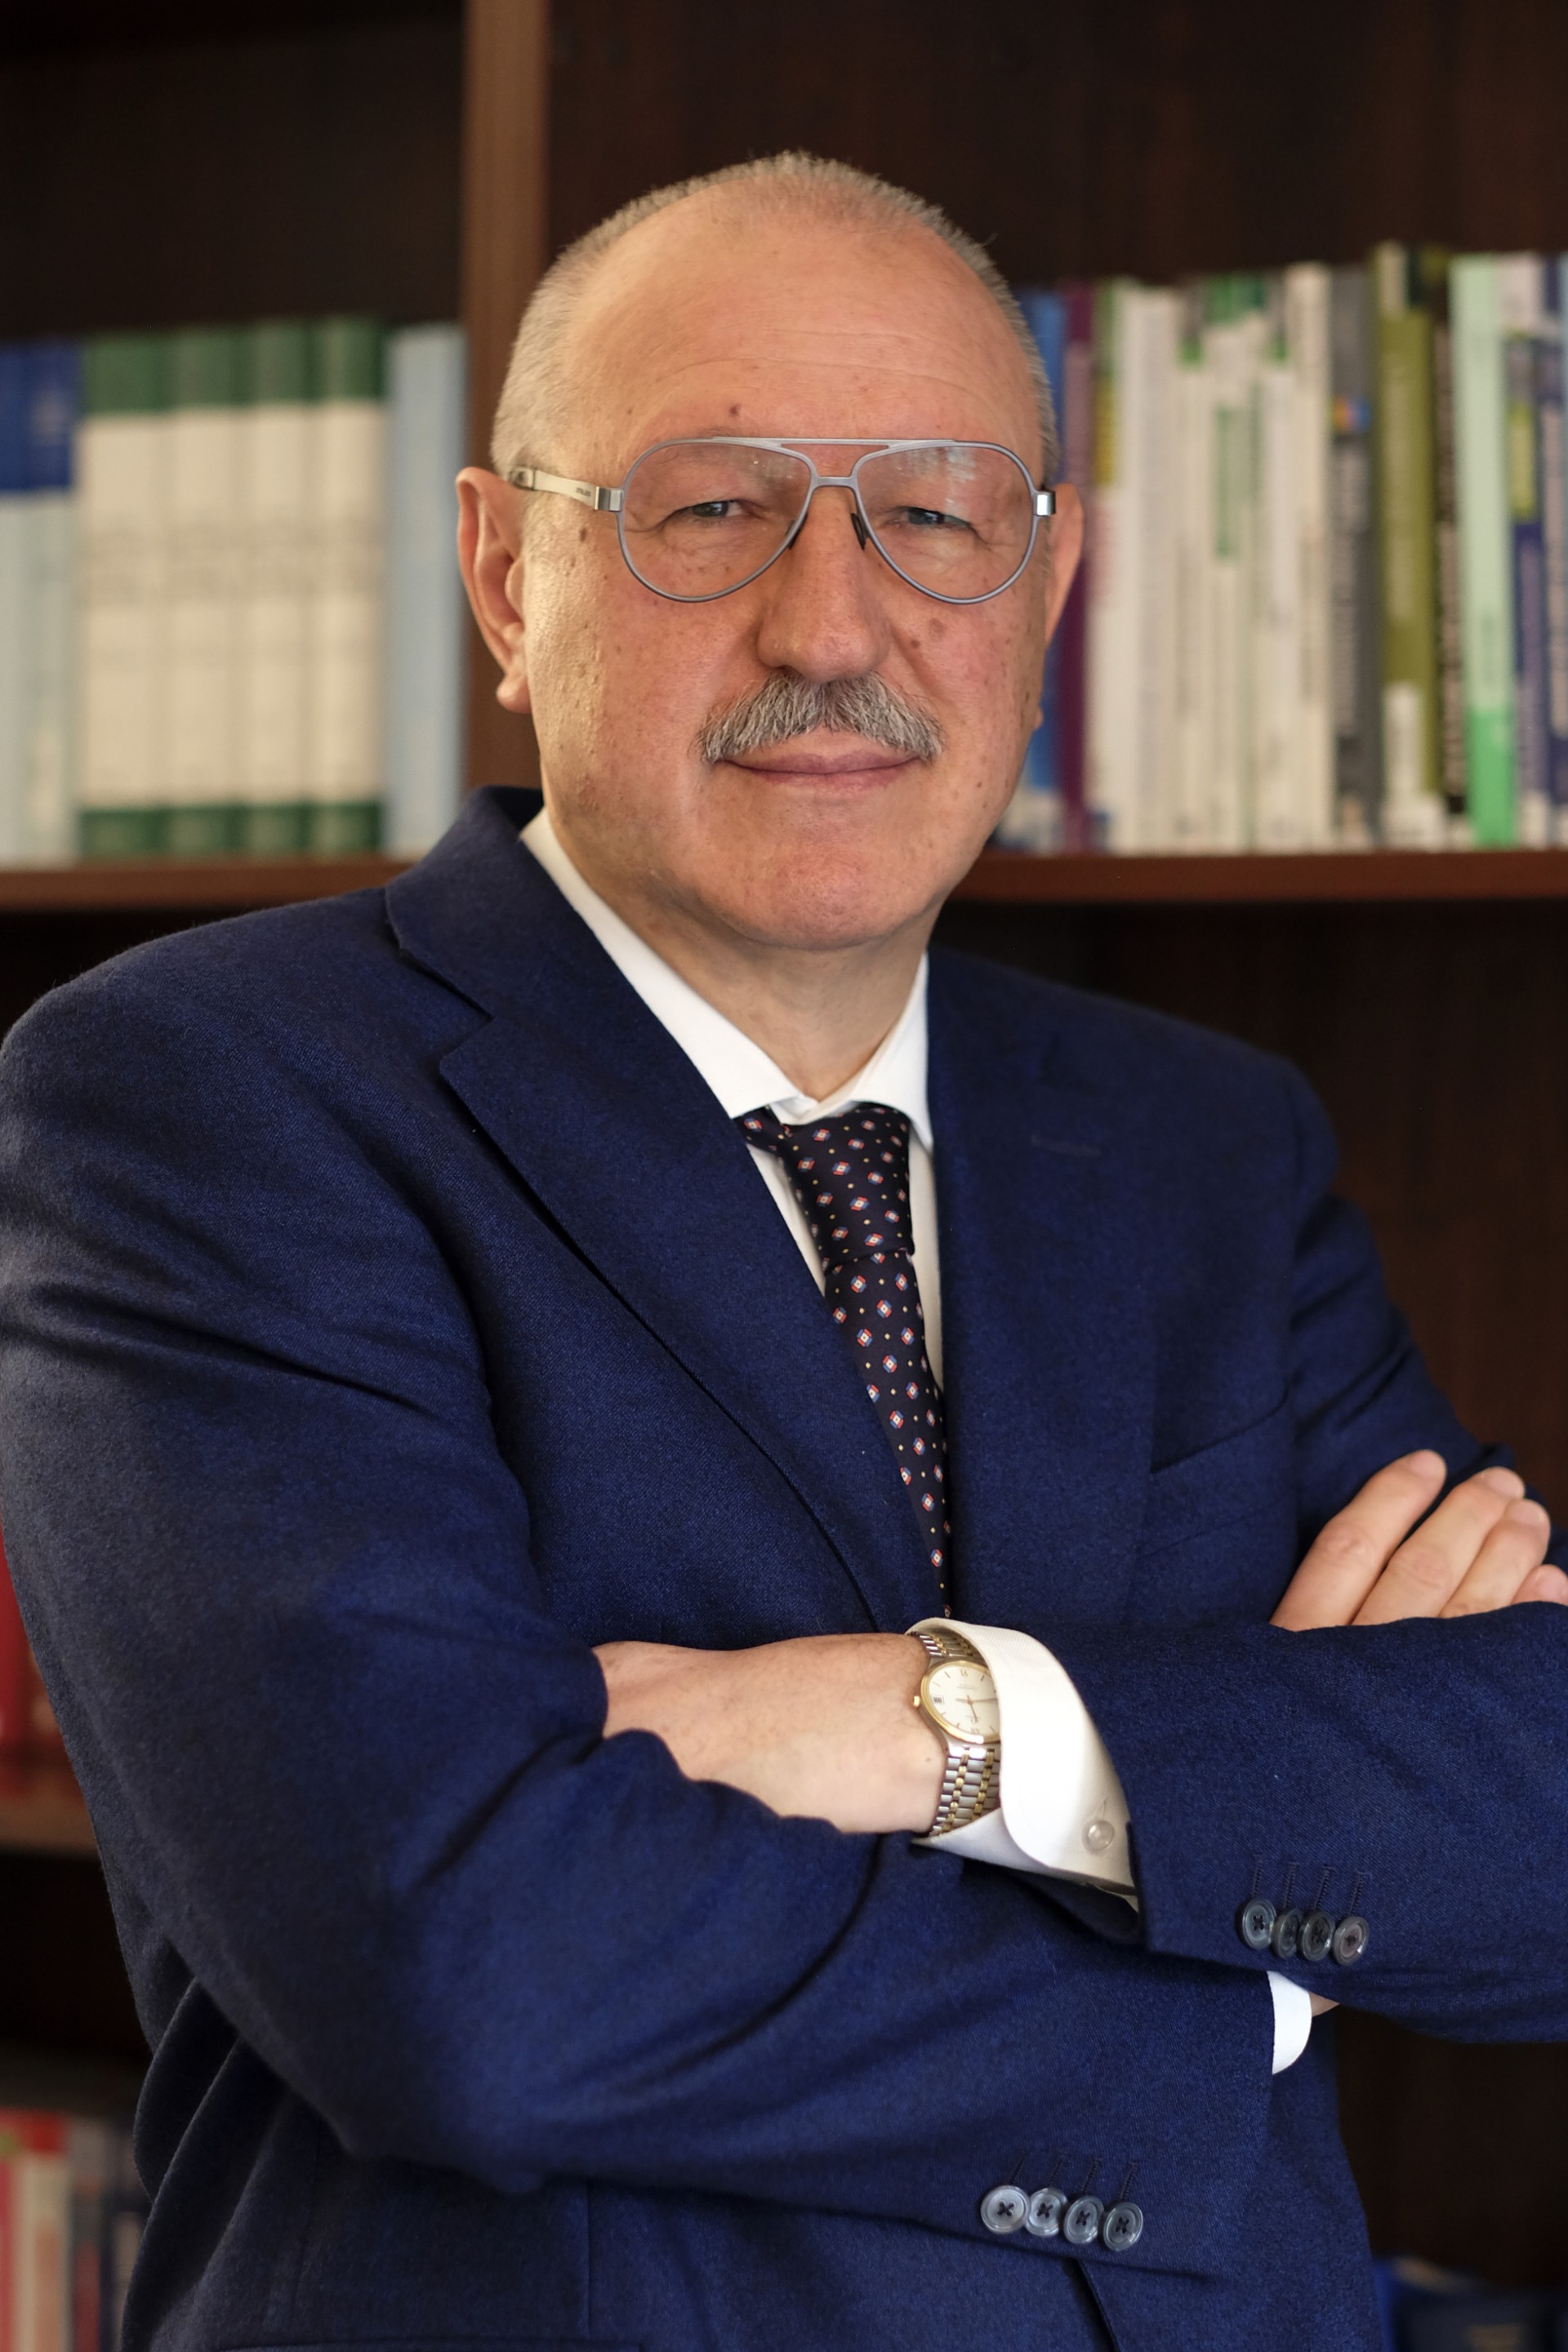 Bookkeeper Giuseppe Dalle Vedove